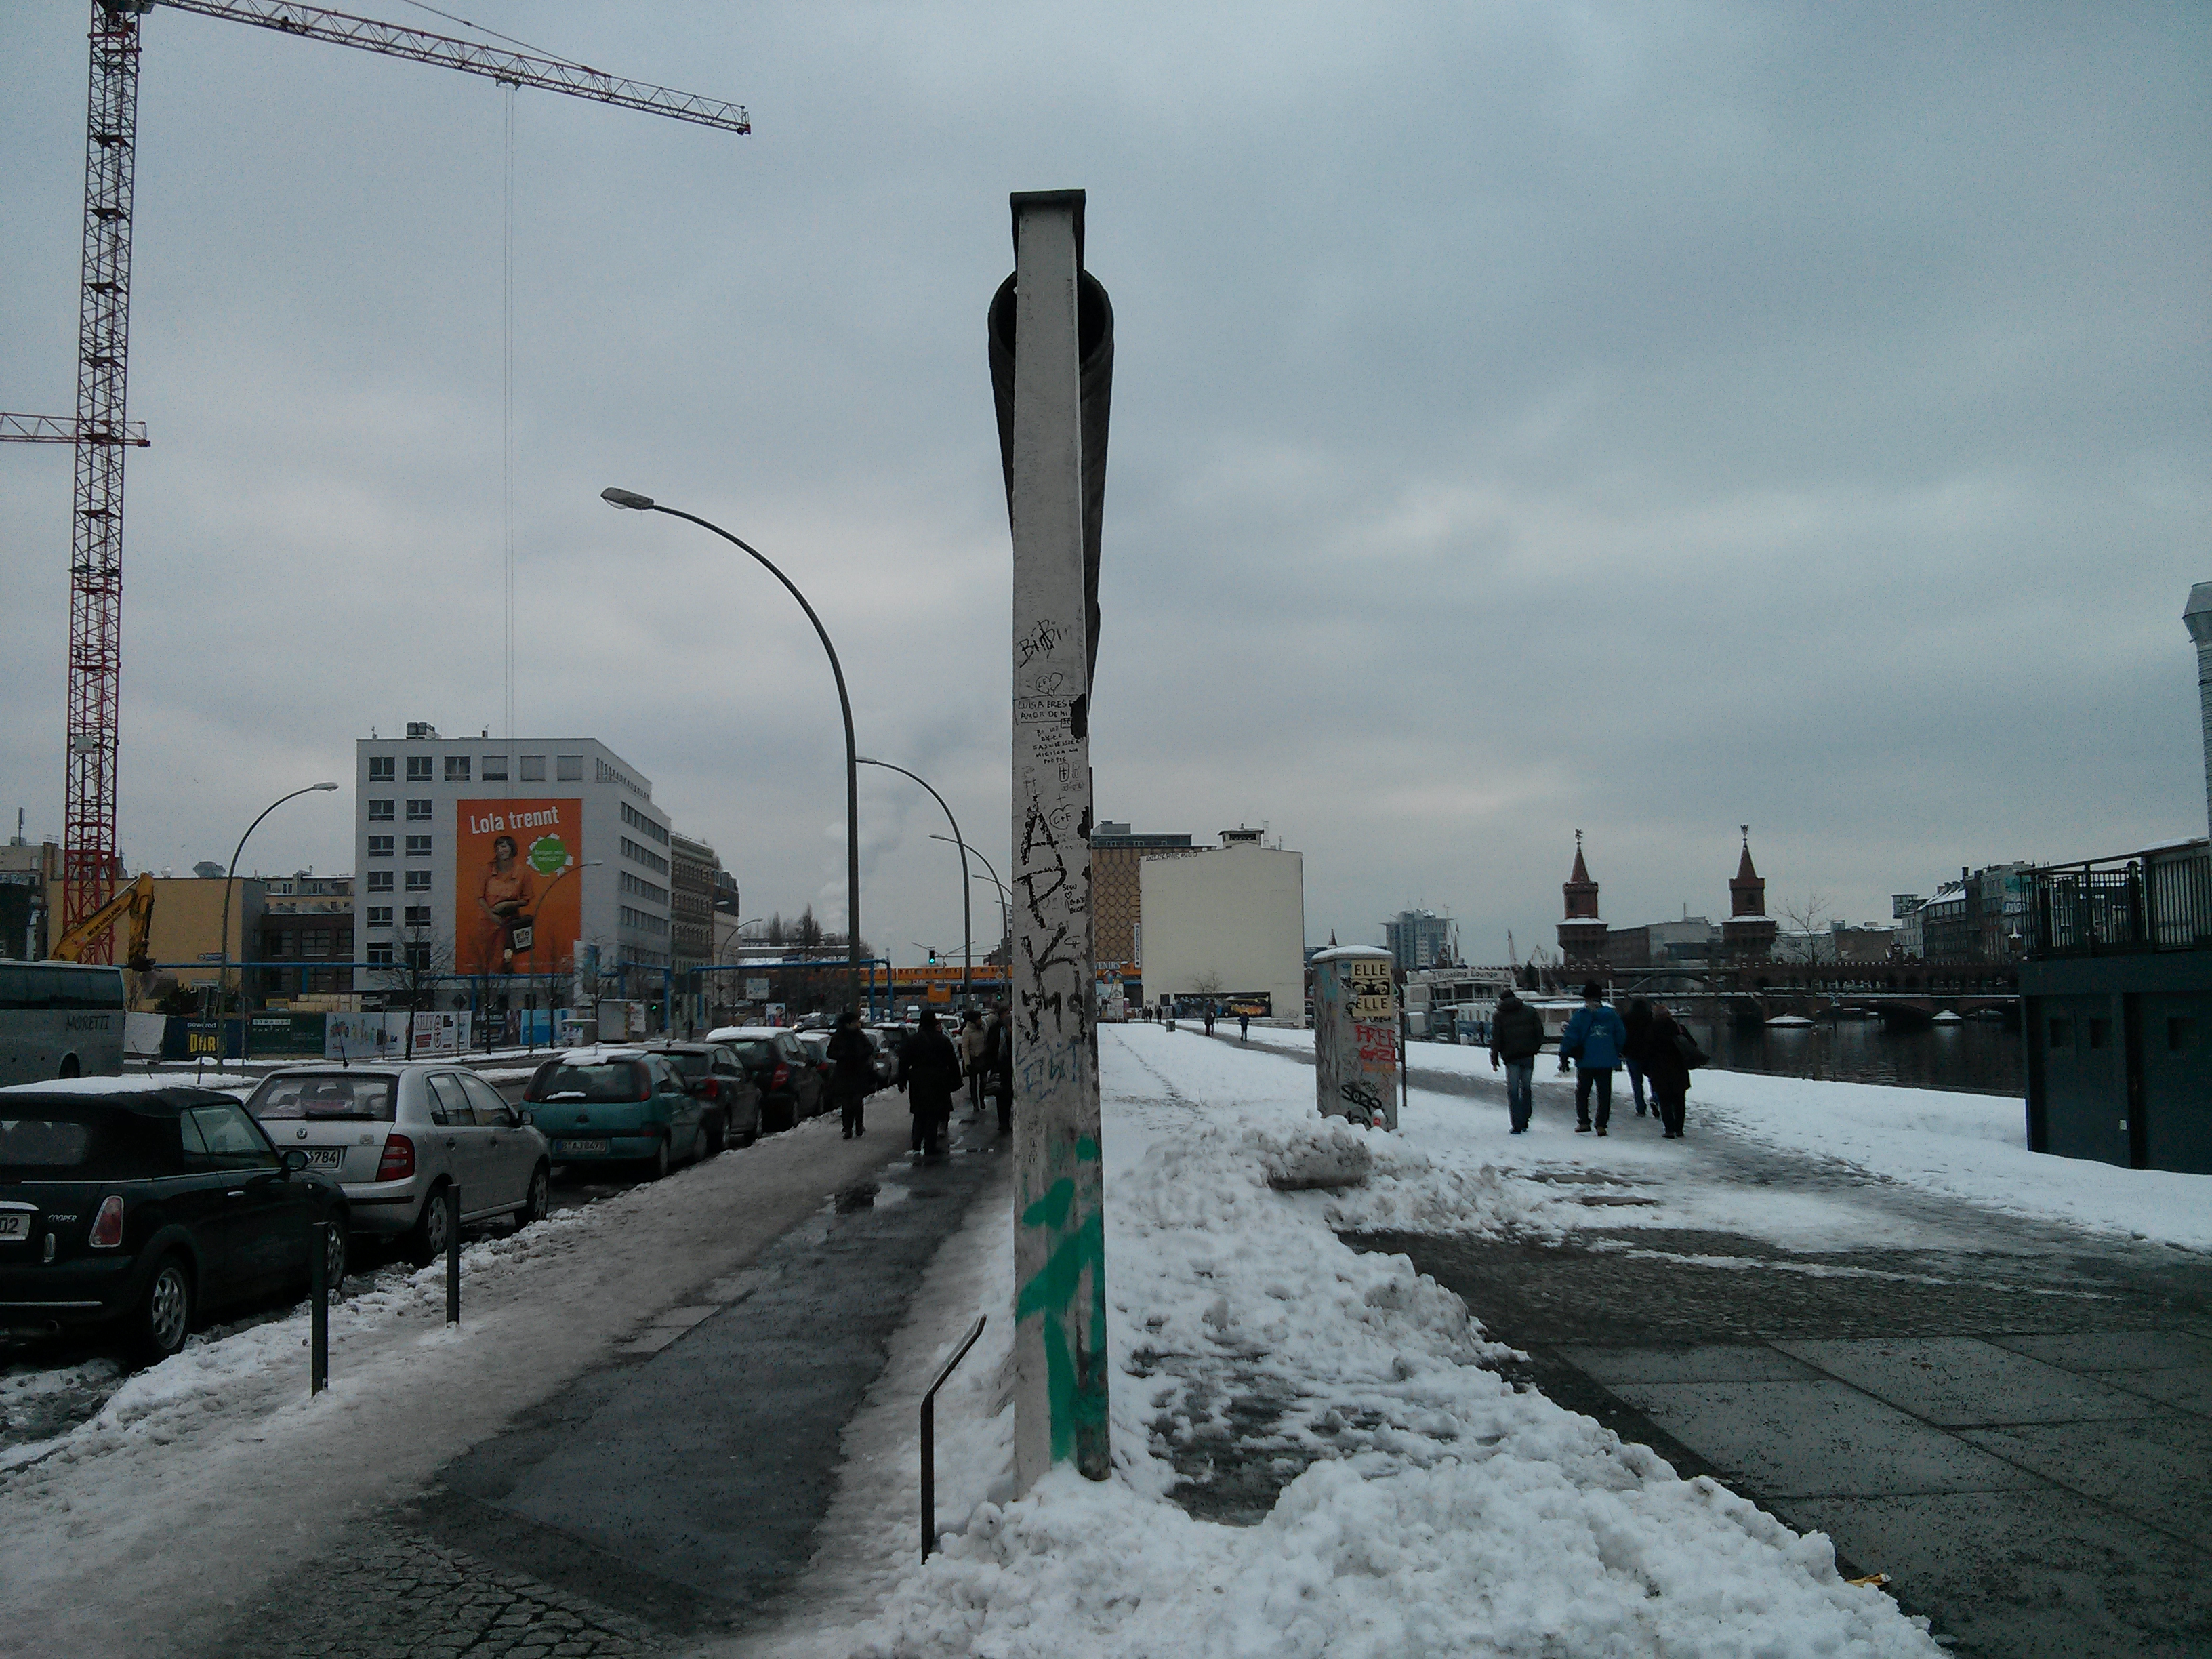 East Side Gallery, Berlin Wall, Germany